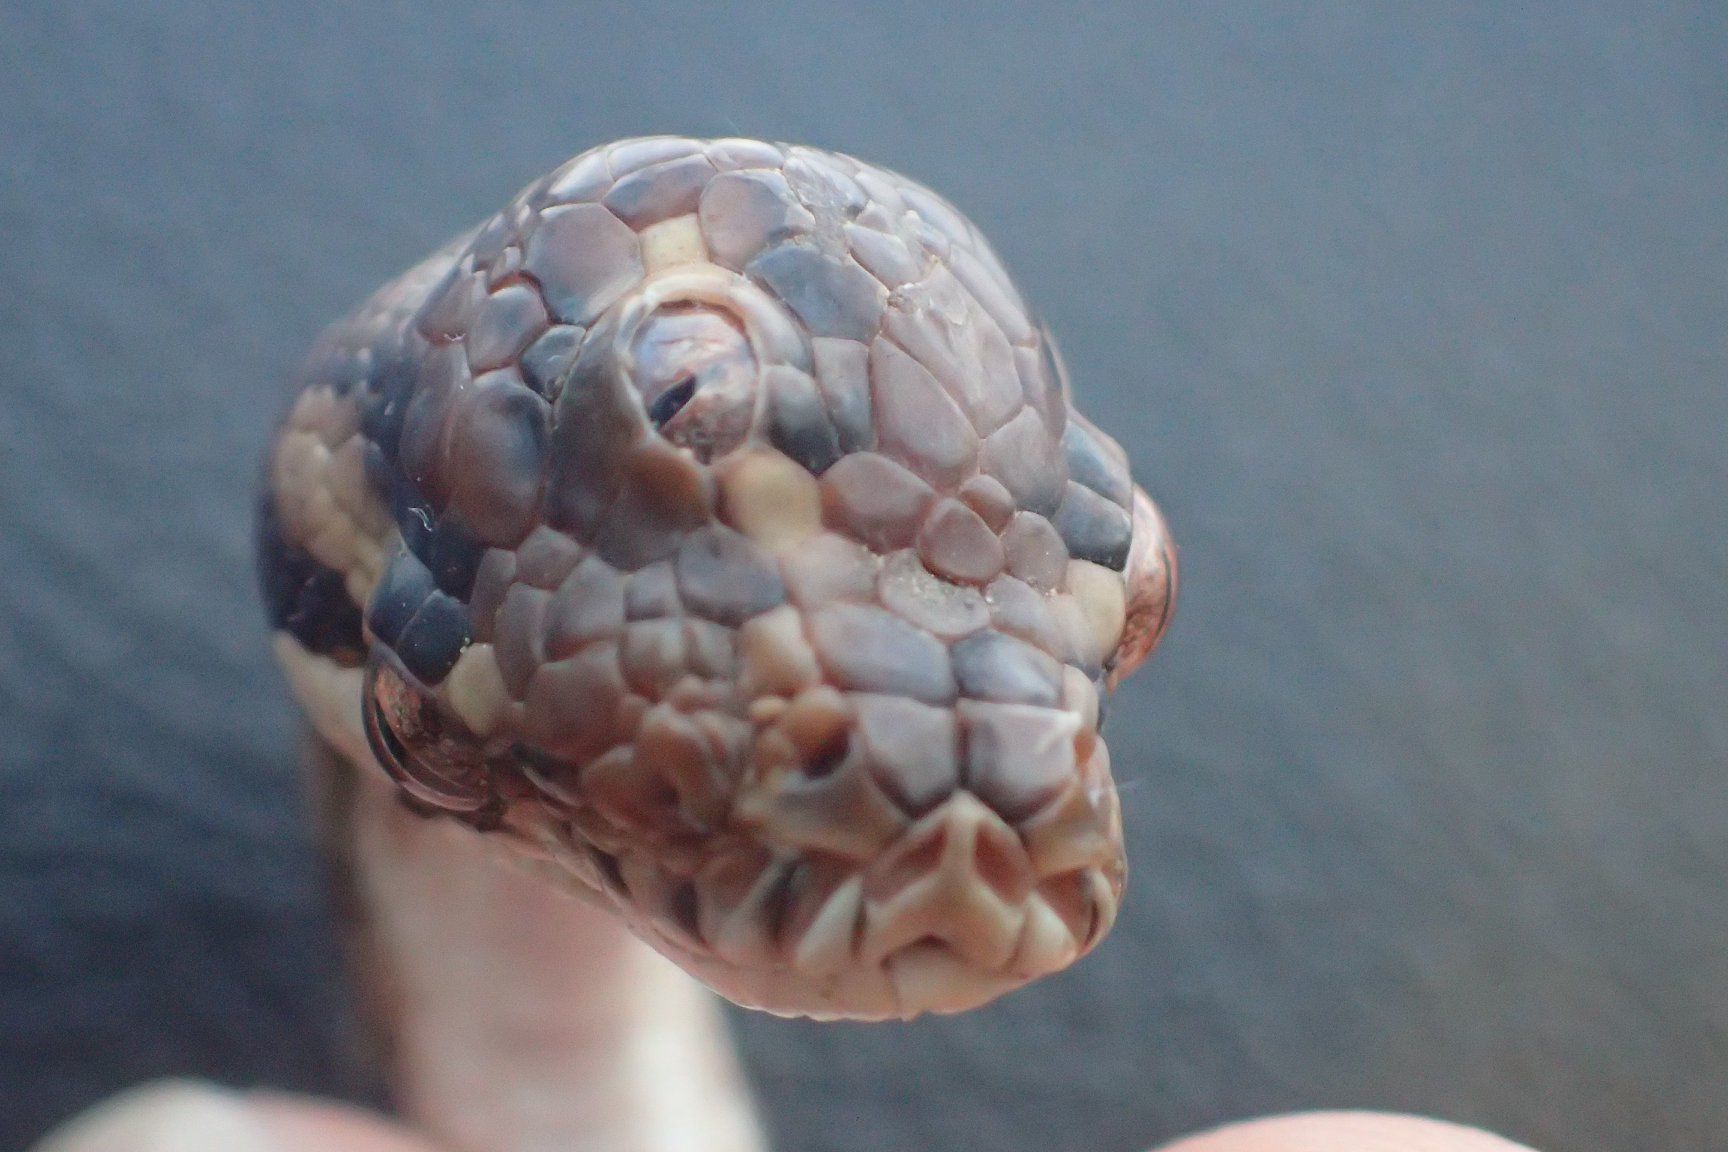 Snake, Australia